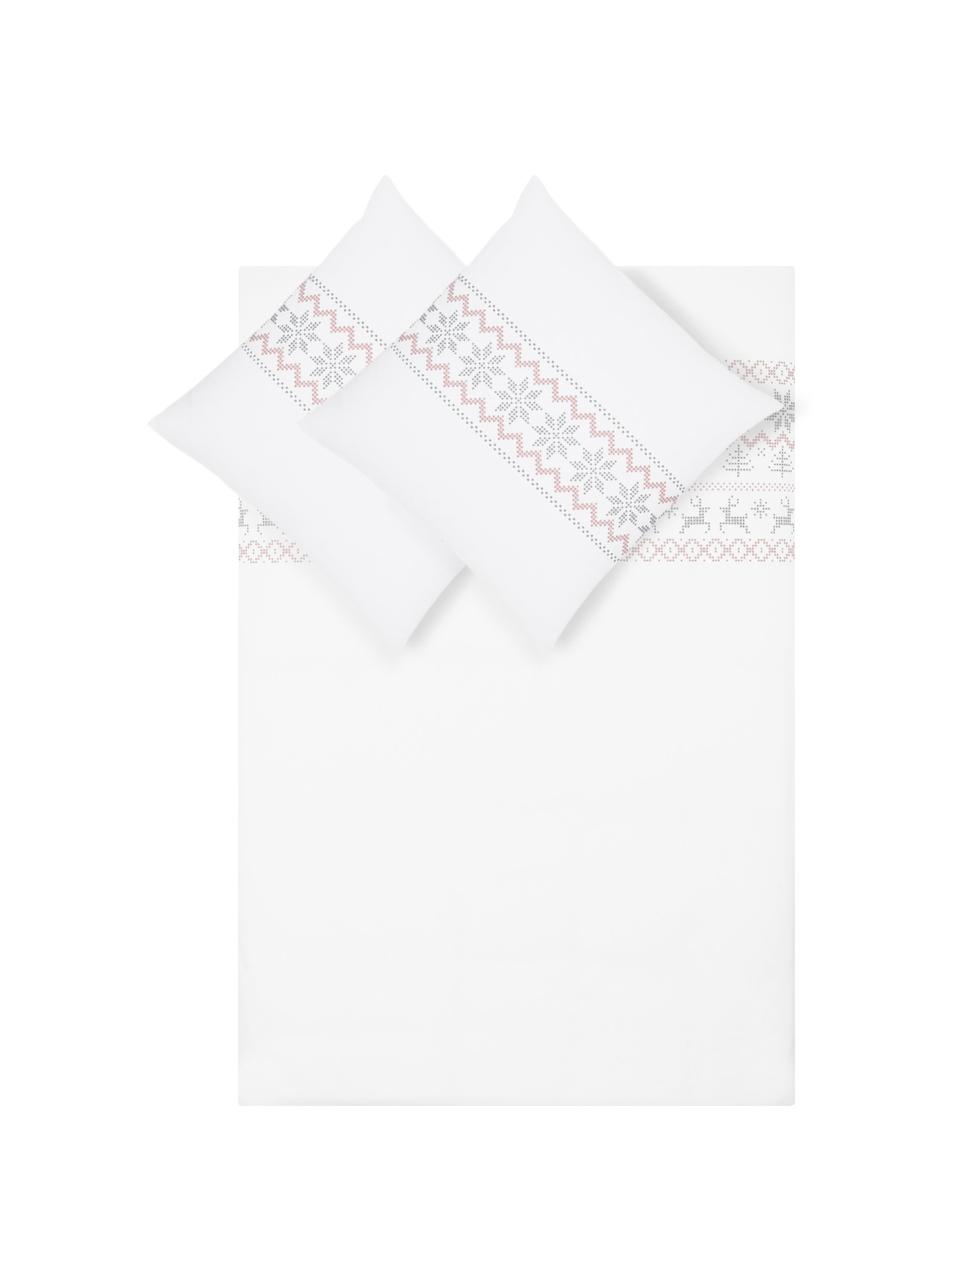 Flanell-Bettwäsche Finja mit Muster, Webart: Flanell Flanell ist ein s, Weiß, Altrosa, Grau, 135 x 200 cm + 1 Kissen 80 x 80 cm